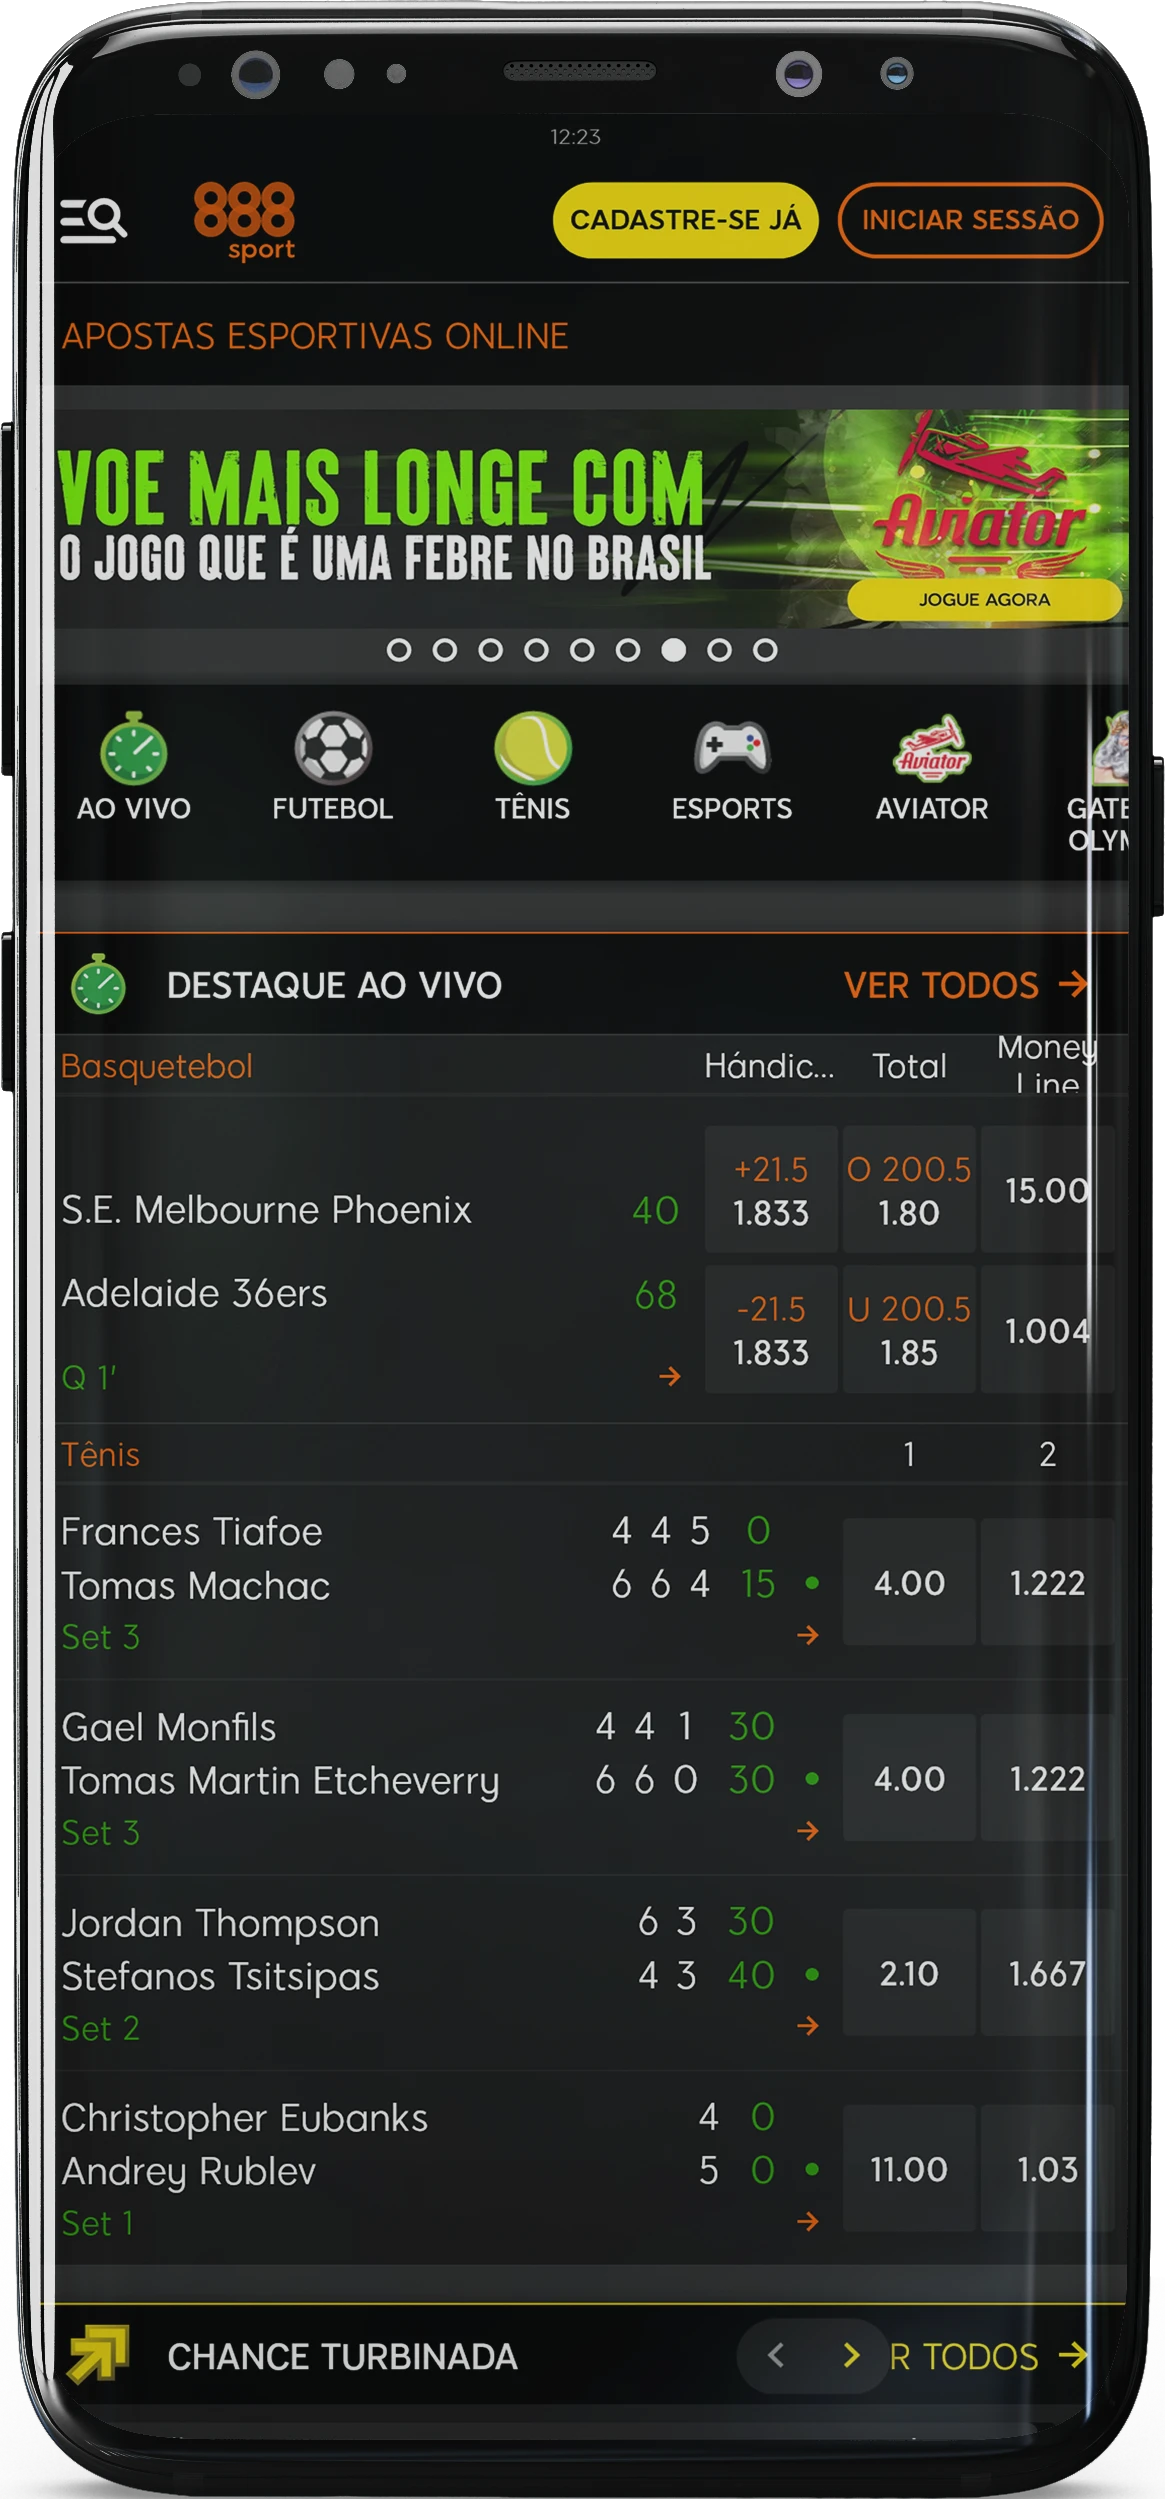 Captura de tela da página inicial do aplicativo 888sport